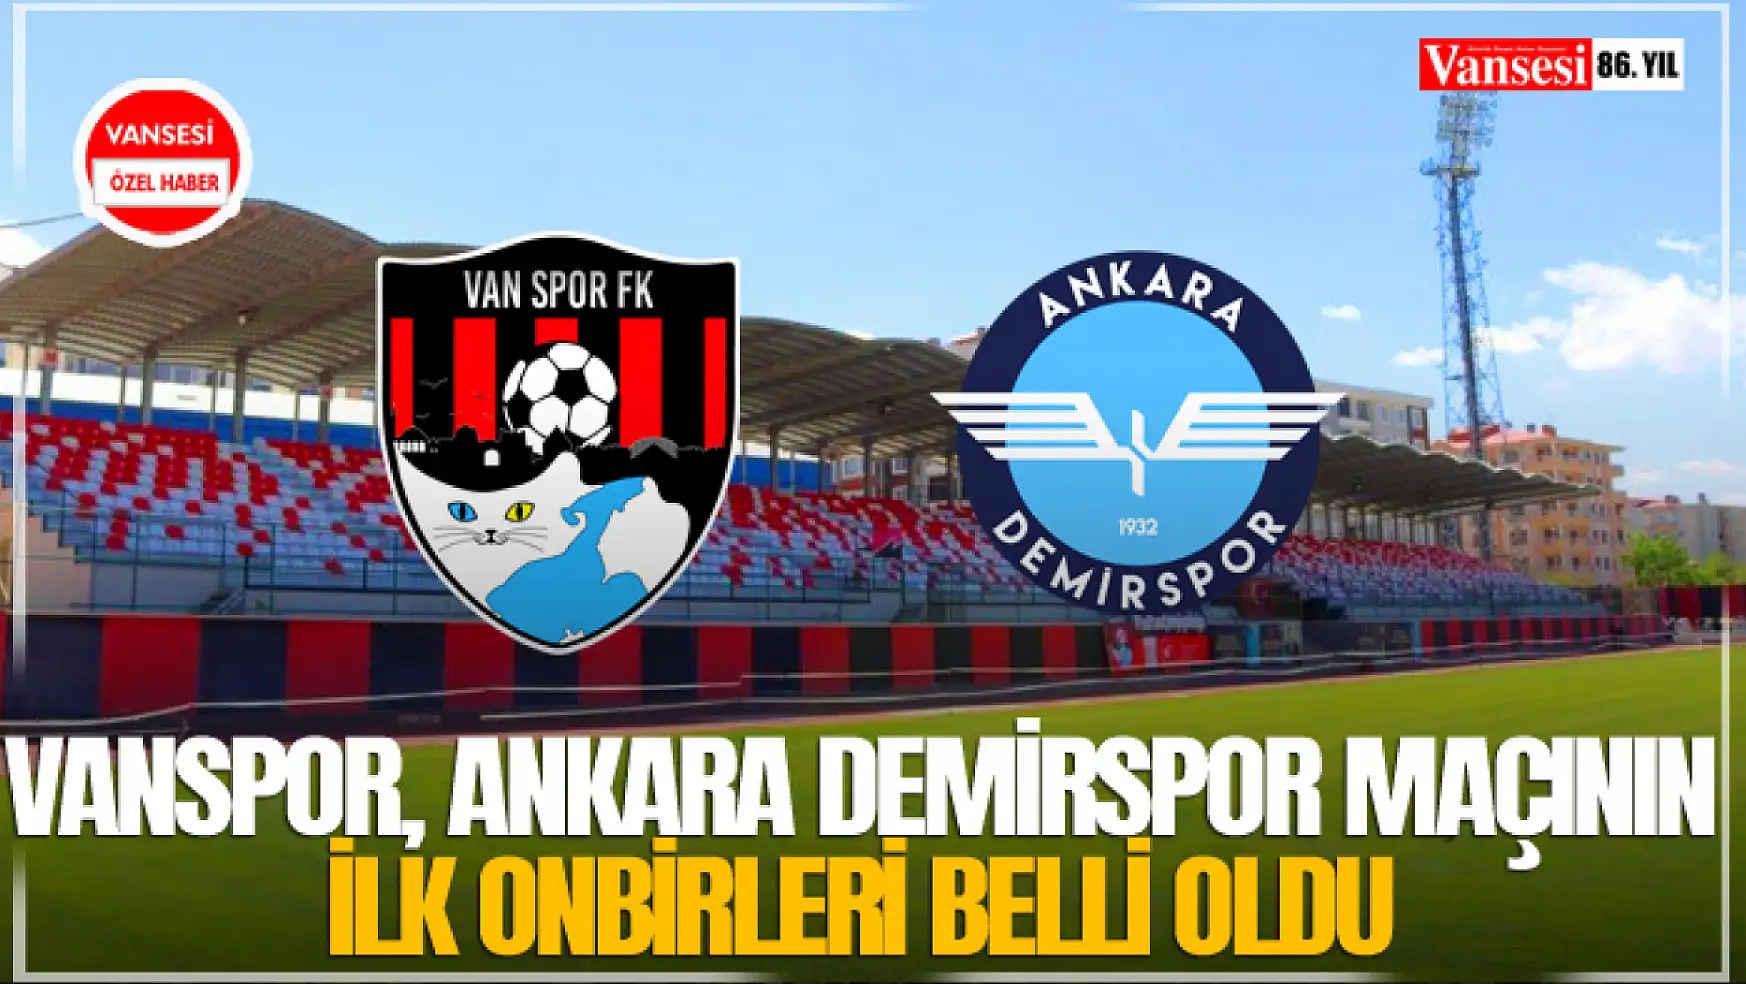 Vanspor, Ankara Demirspor maçının ilk onbirleri belli oldu